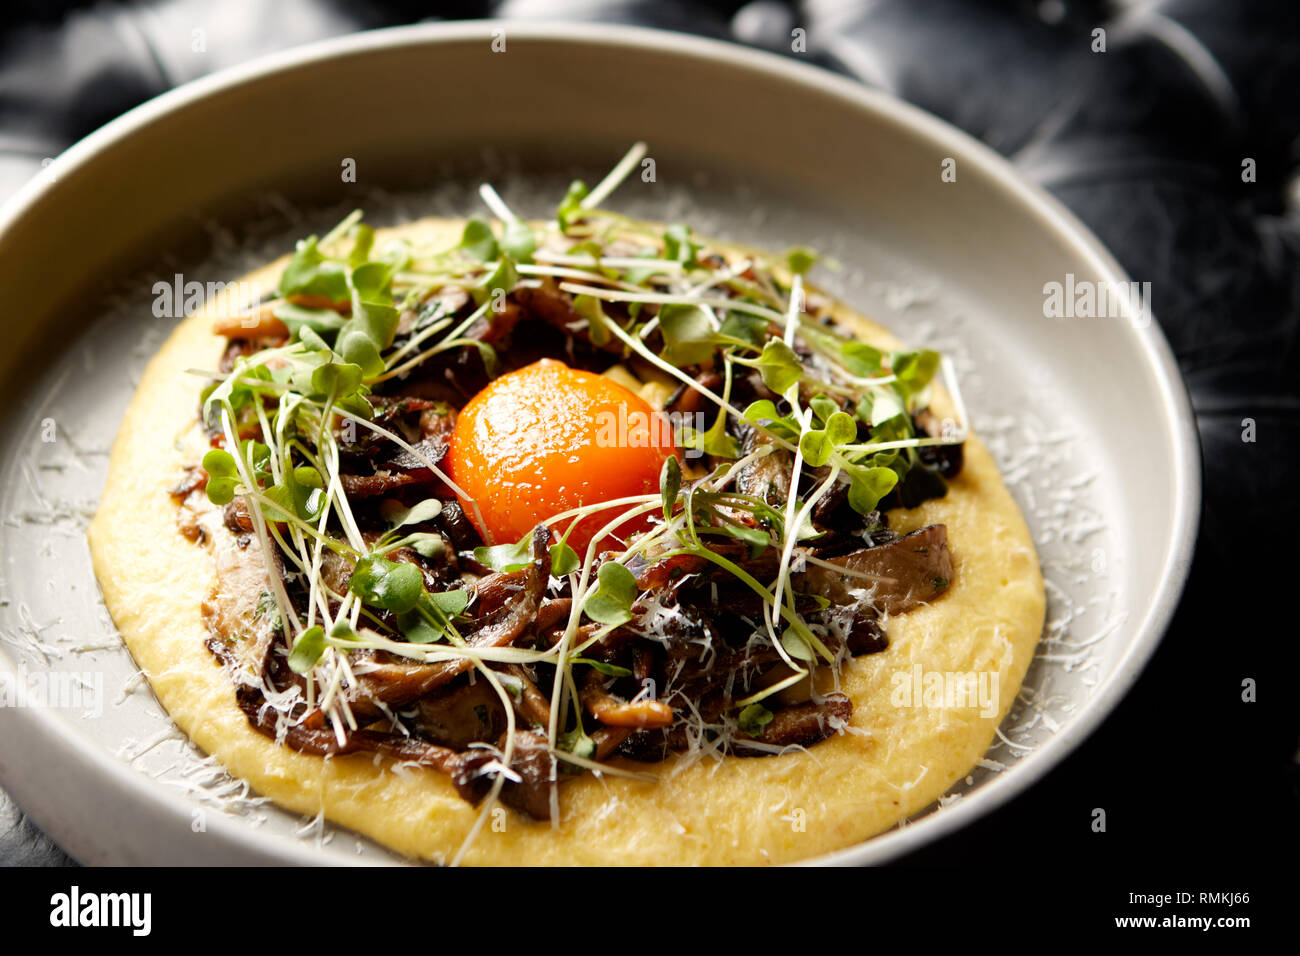 Primo piano di un antipasto cremoso e delizioso composto da funghi, germogli, purea di patate e tuorlo d'uovo. Foto Stock